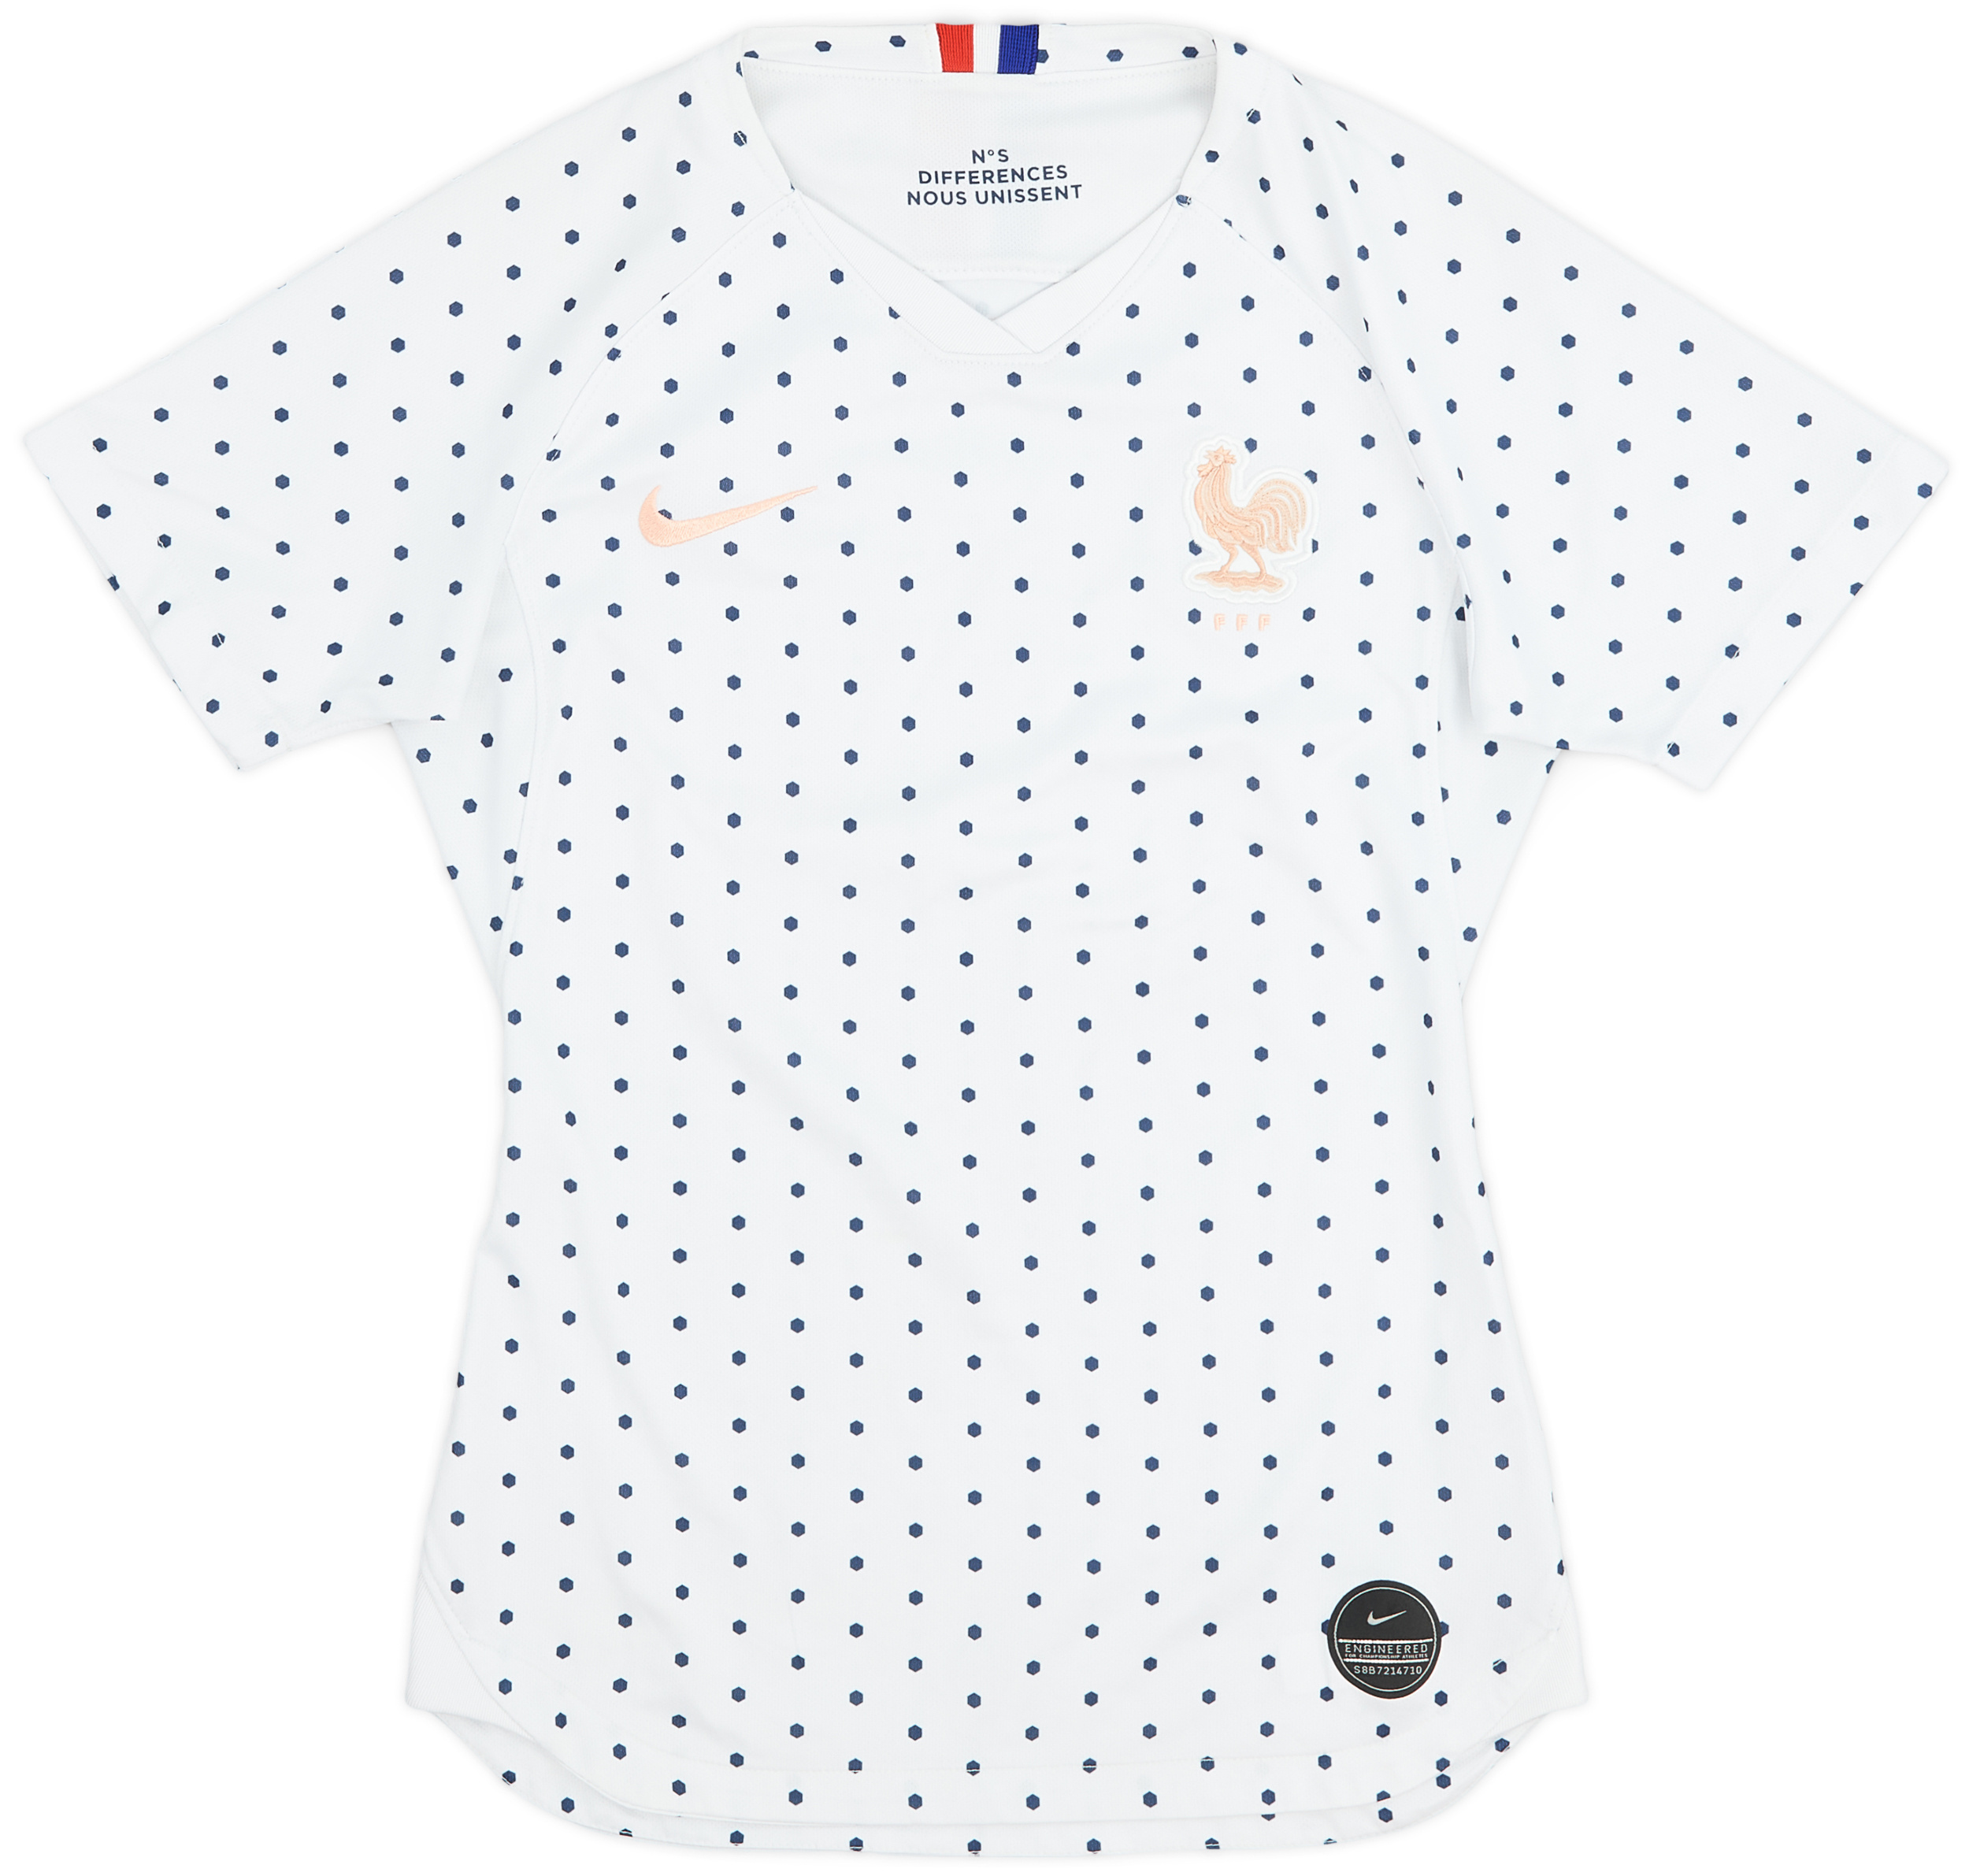 2019-20 France Women's Away Shirt - 9/10 - (Women's )